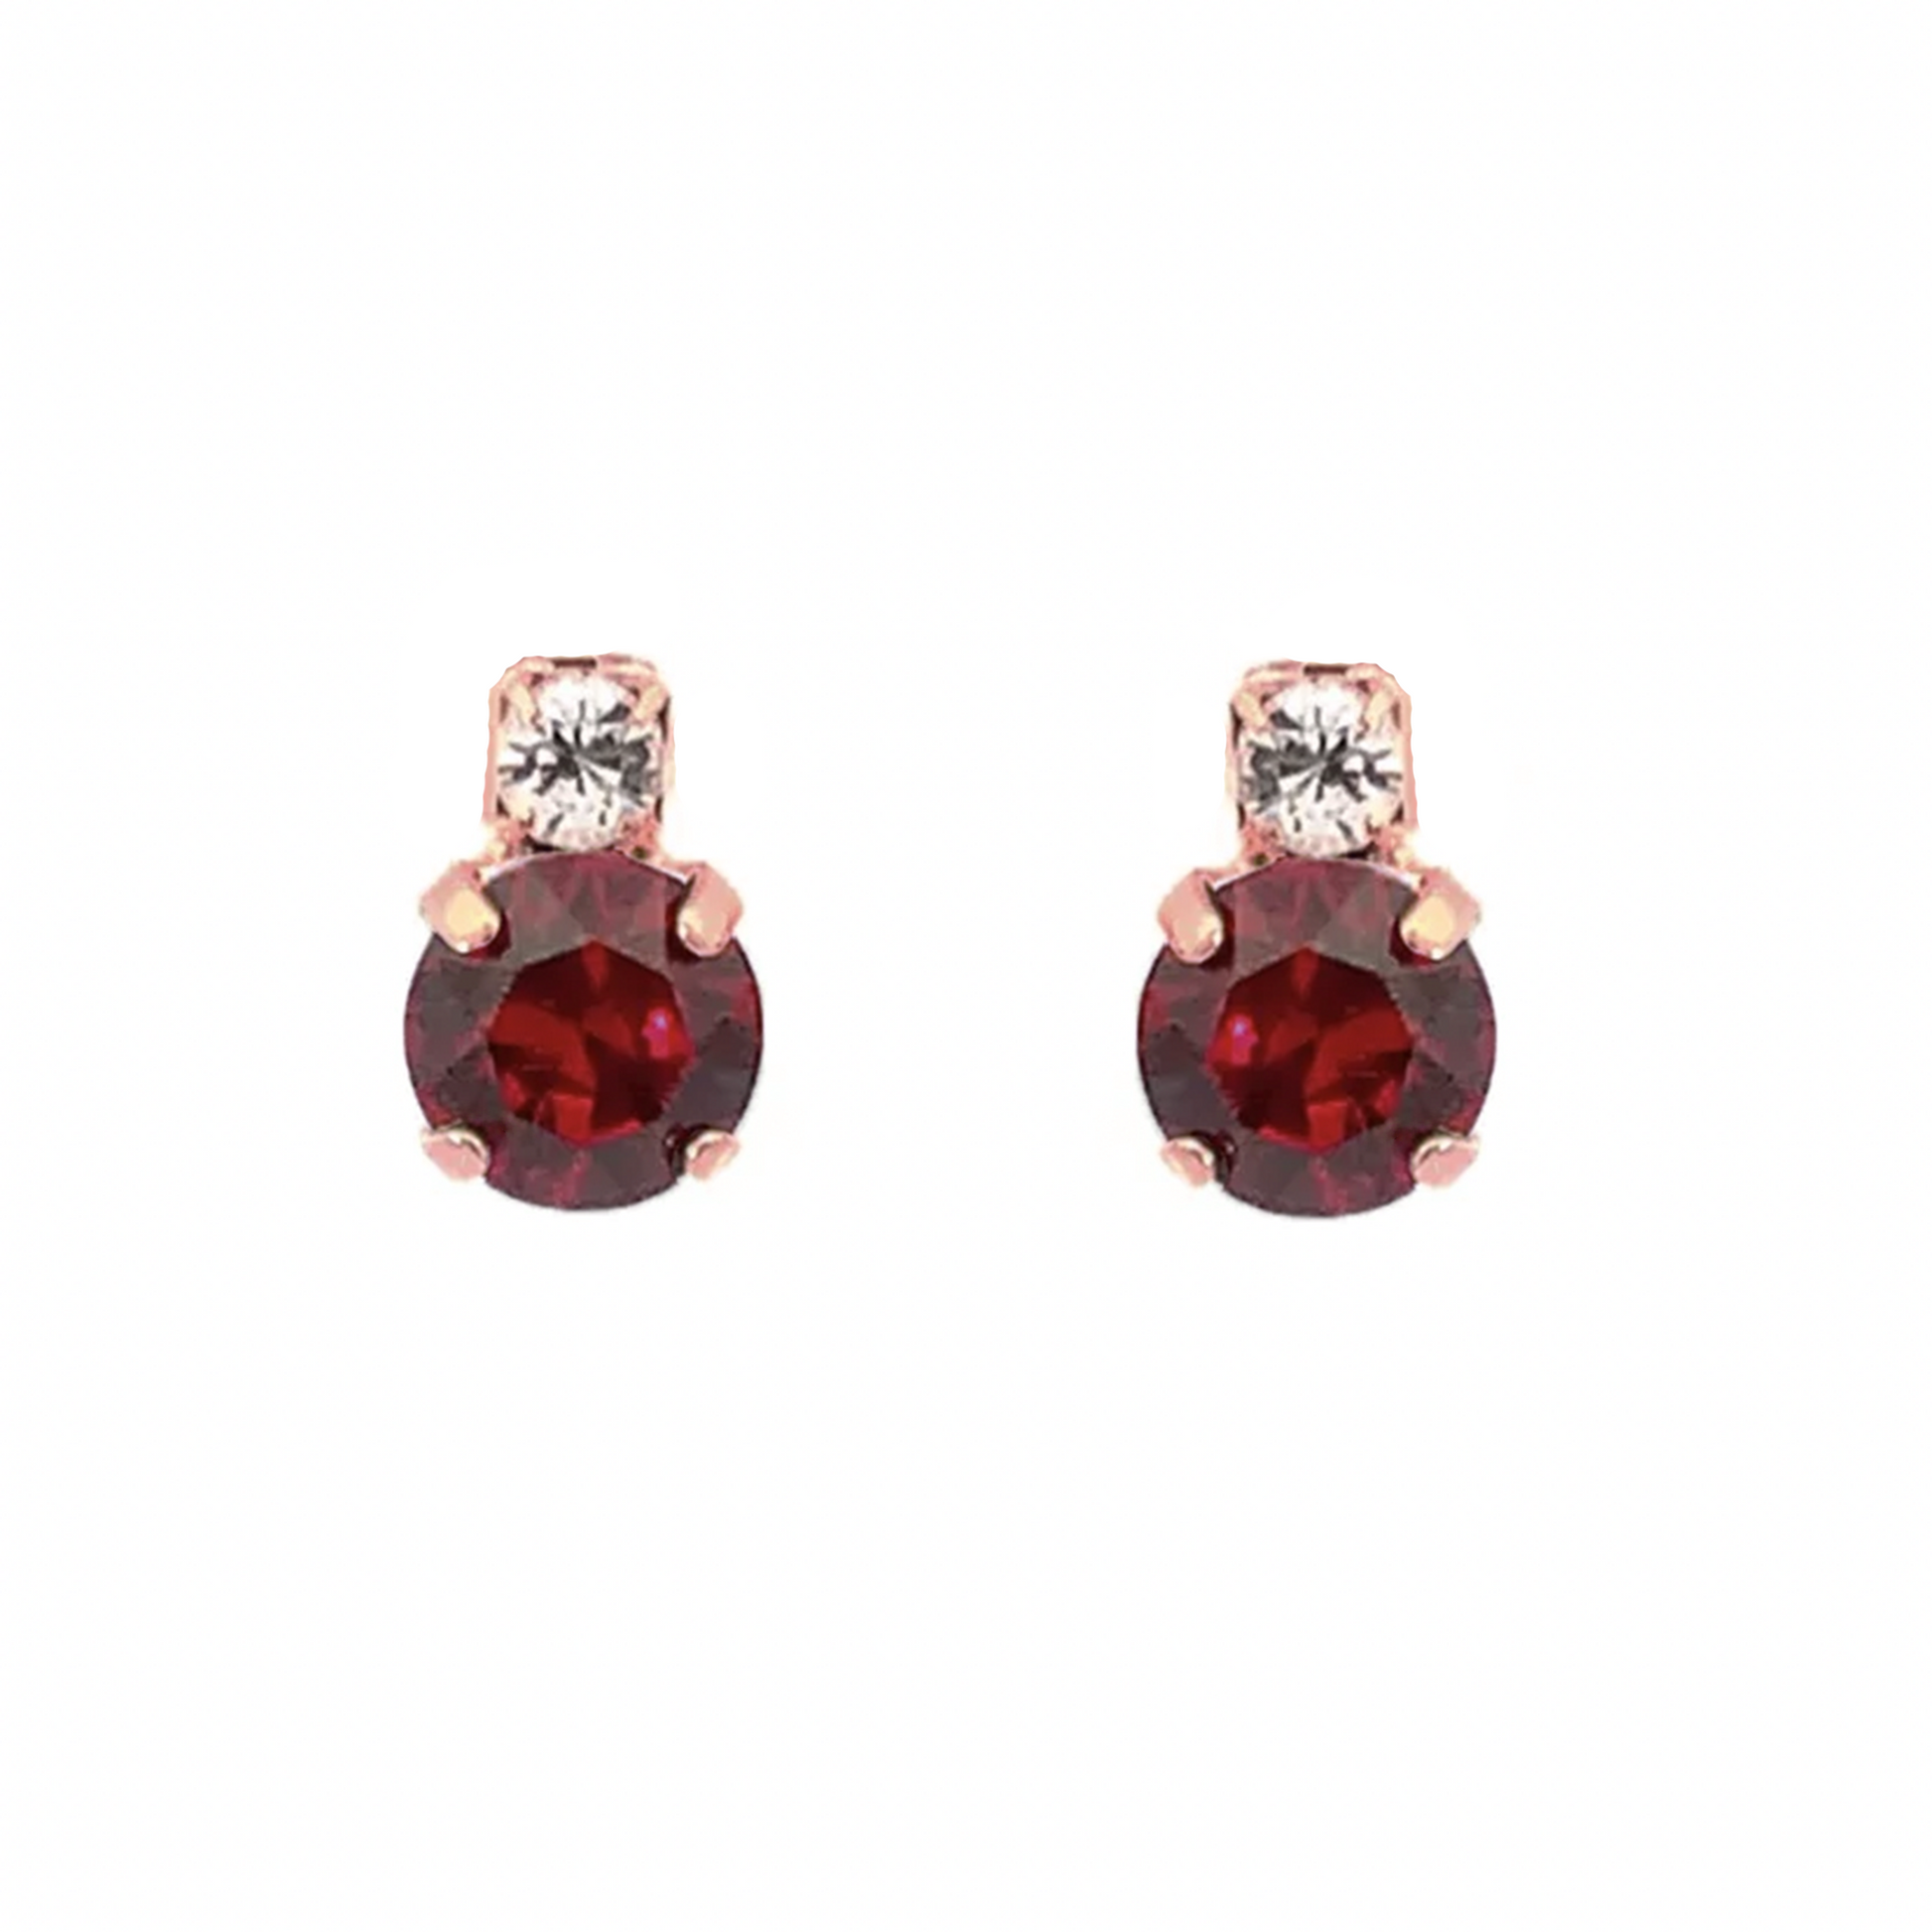 Garnet stud earrings rose gold